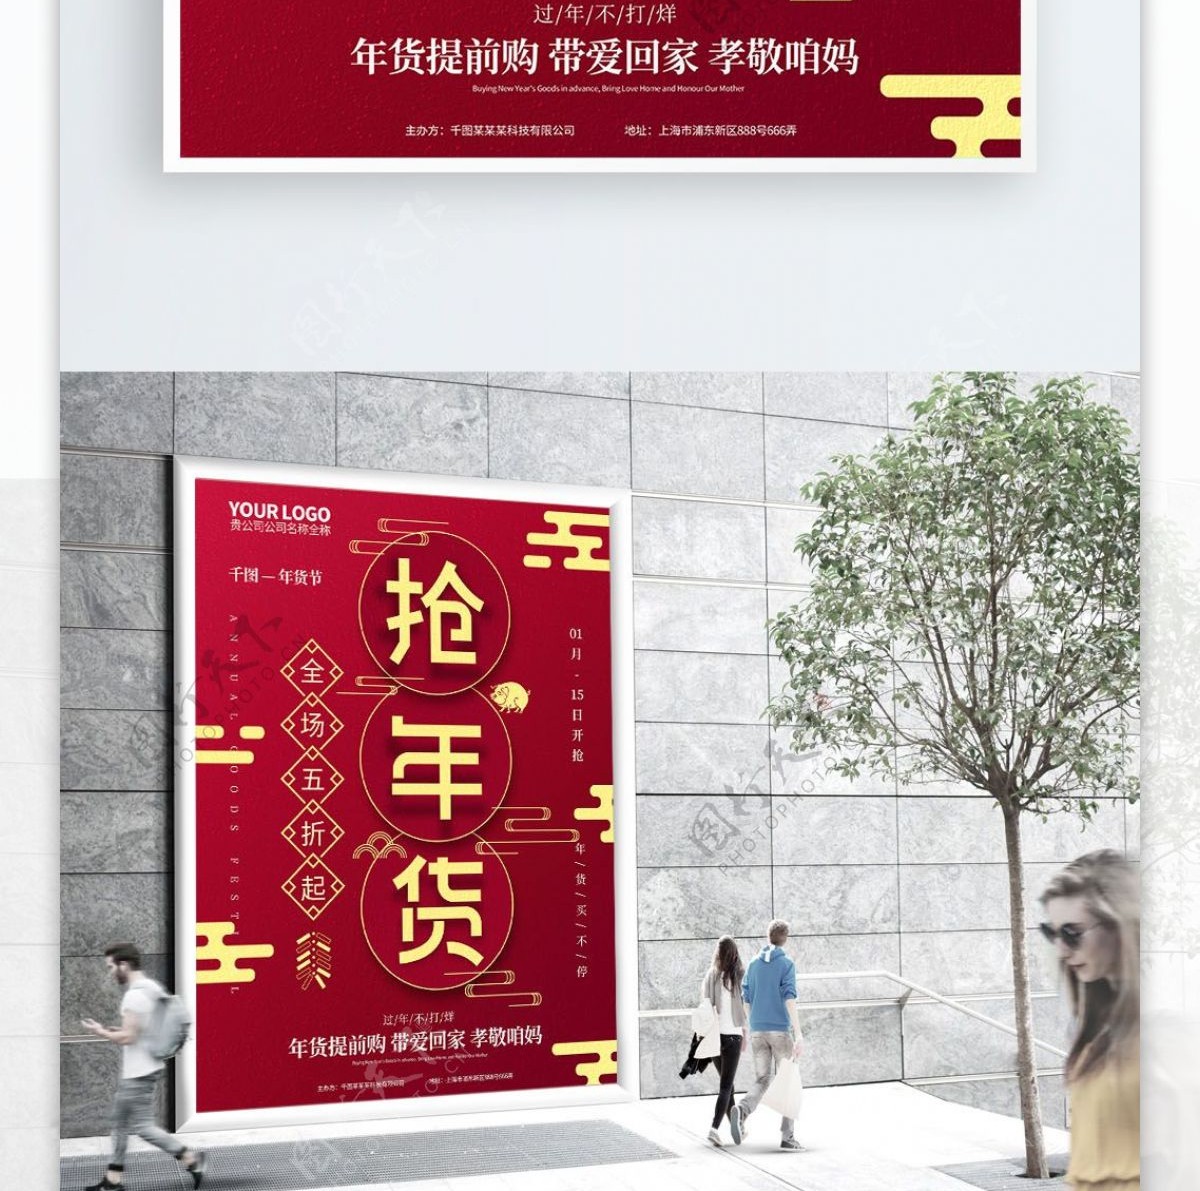 红色喜庆抢年货年货节促销海报